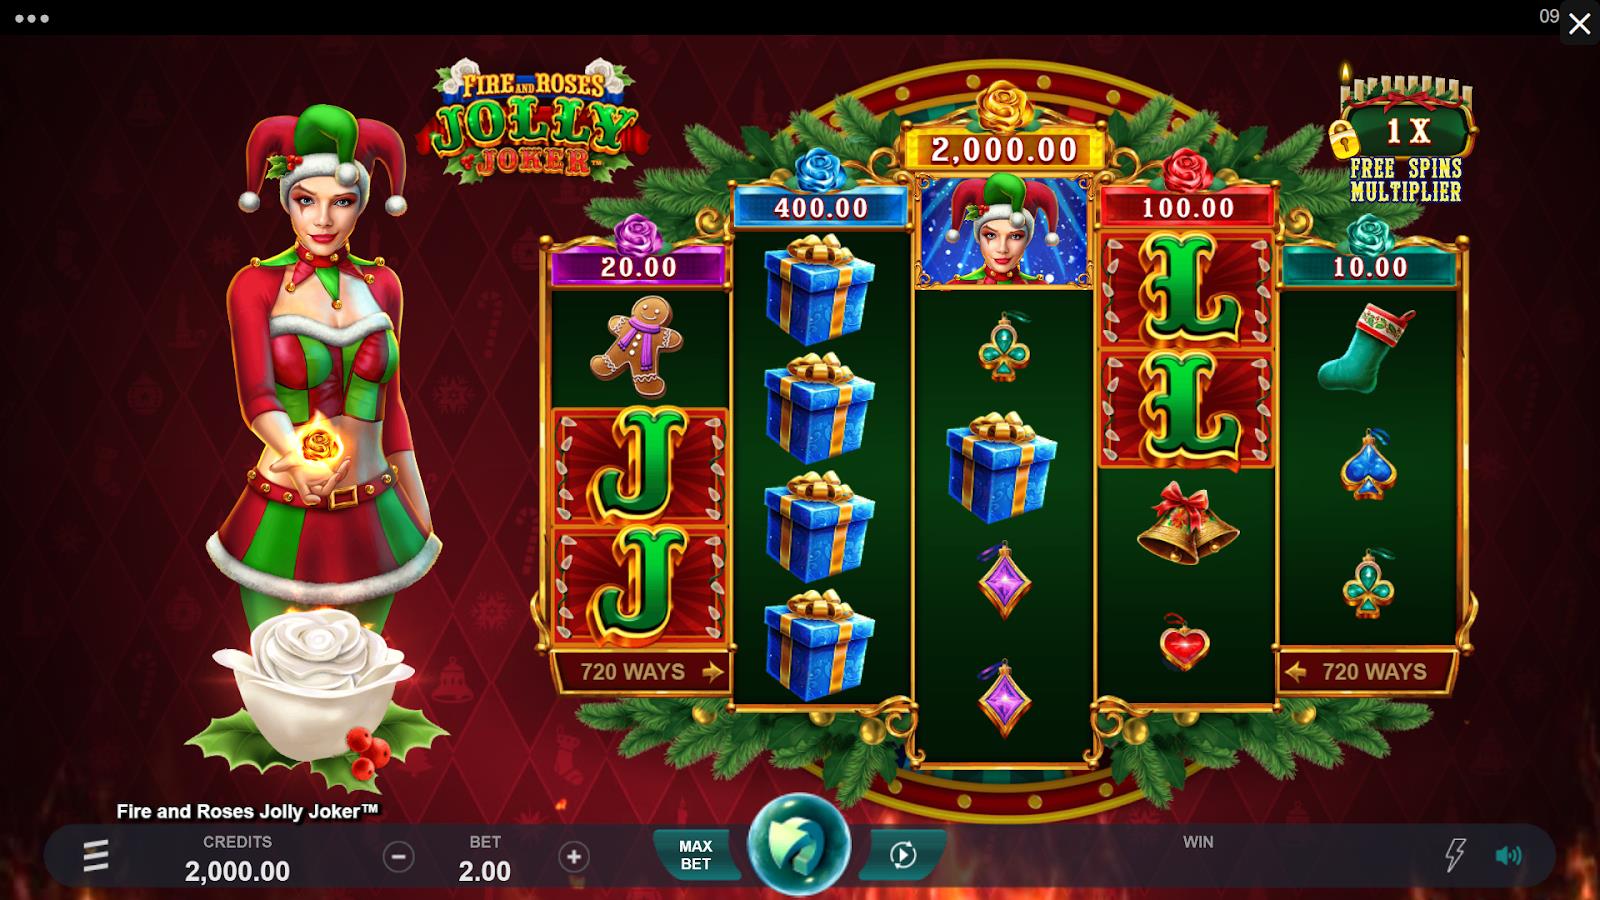 Fire and Roses Jolly Joker Slot screenshots